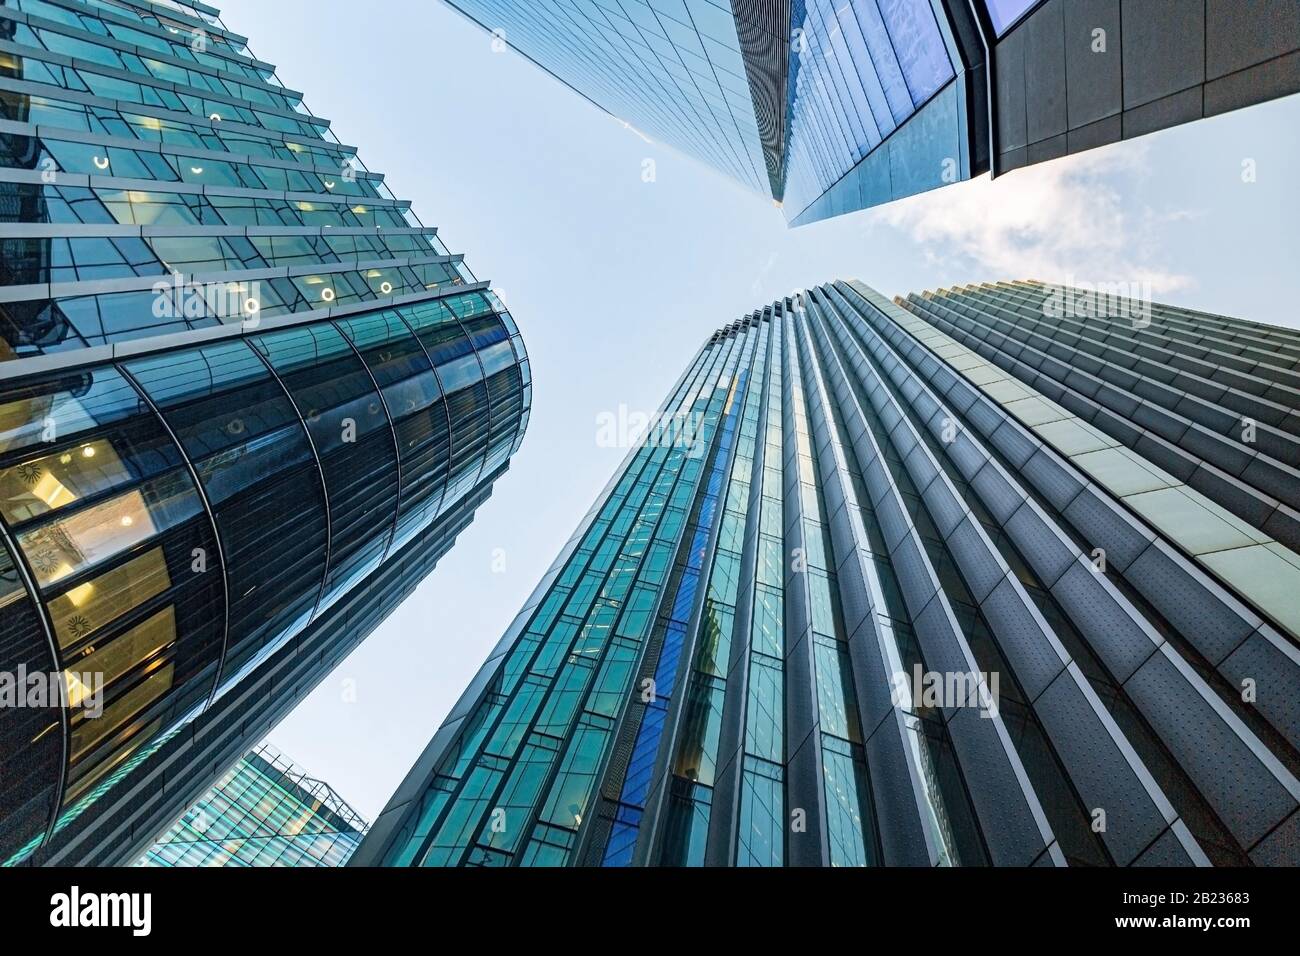 Un exemple de la règle de la photographie vertical Leading Lines a pris le regard vers le haut sur les bâtiments en verre de grande taille dans le quartier financier de Londres Banque D'Images